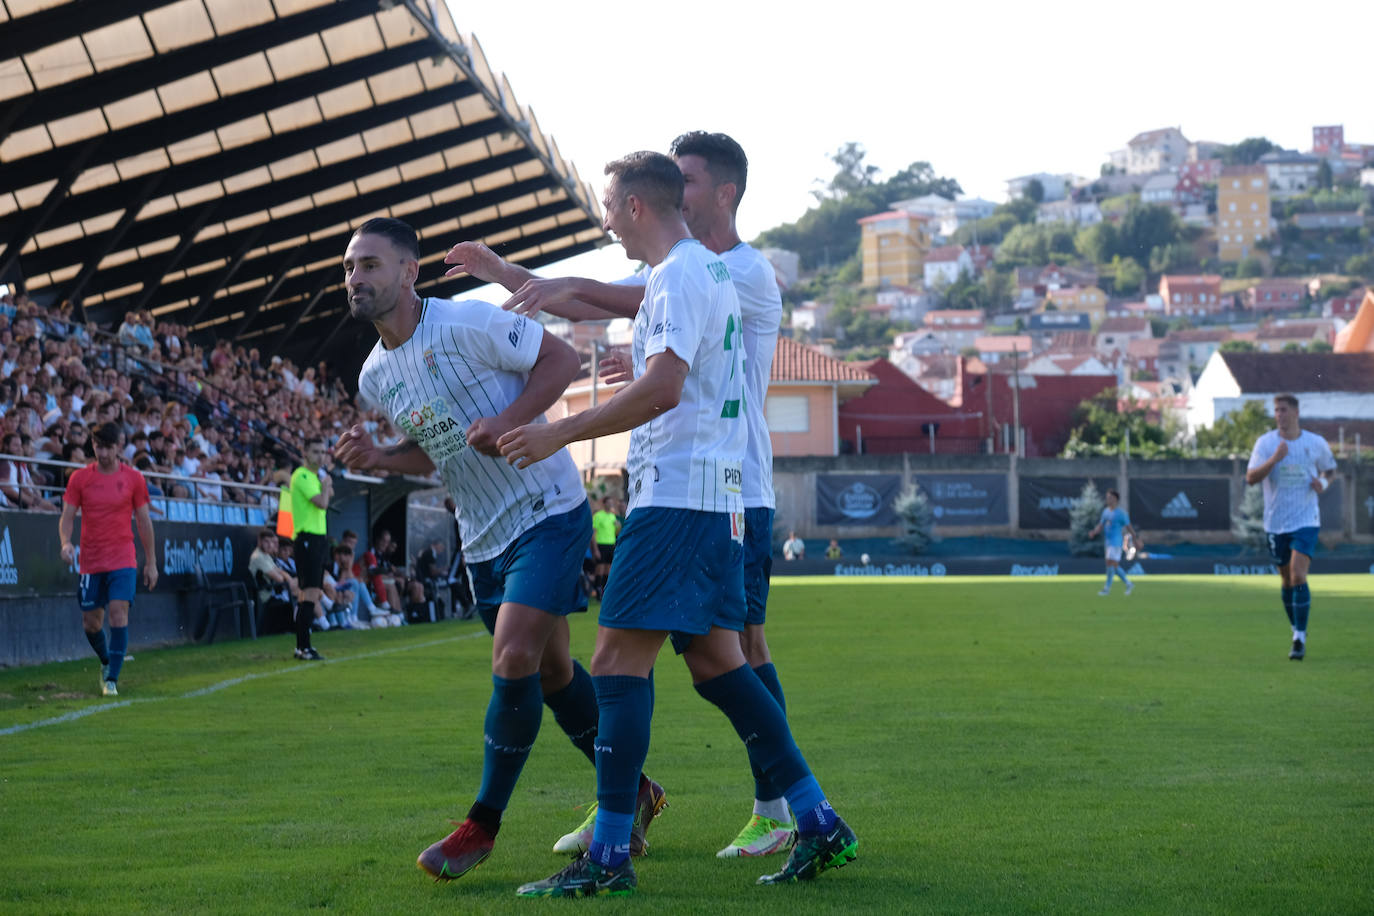 El Celta de Vigo B - Córdoba CF, en imágenes